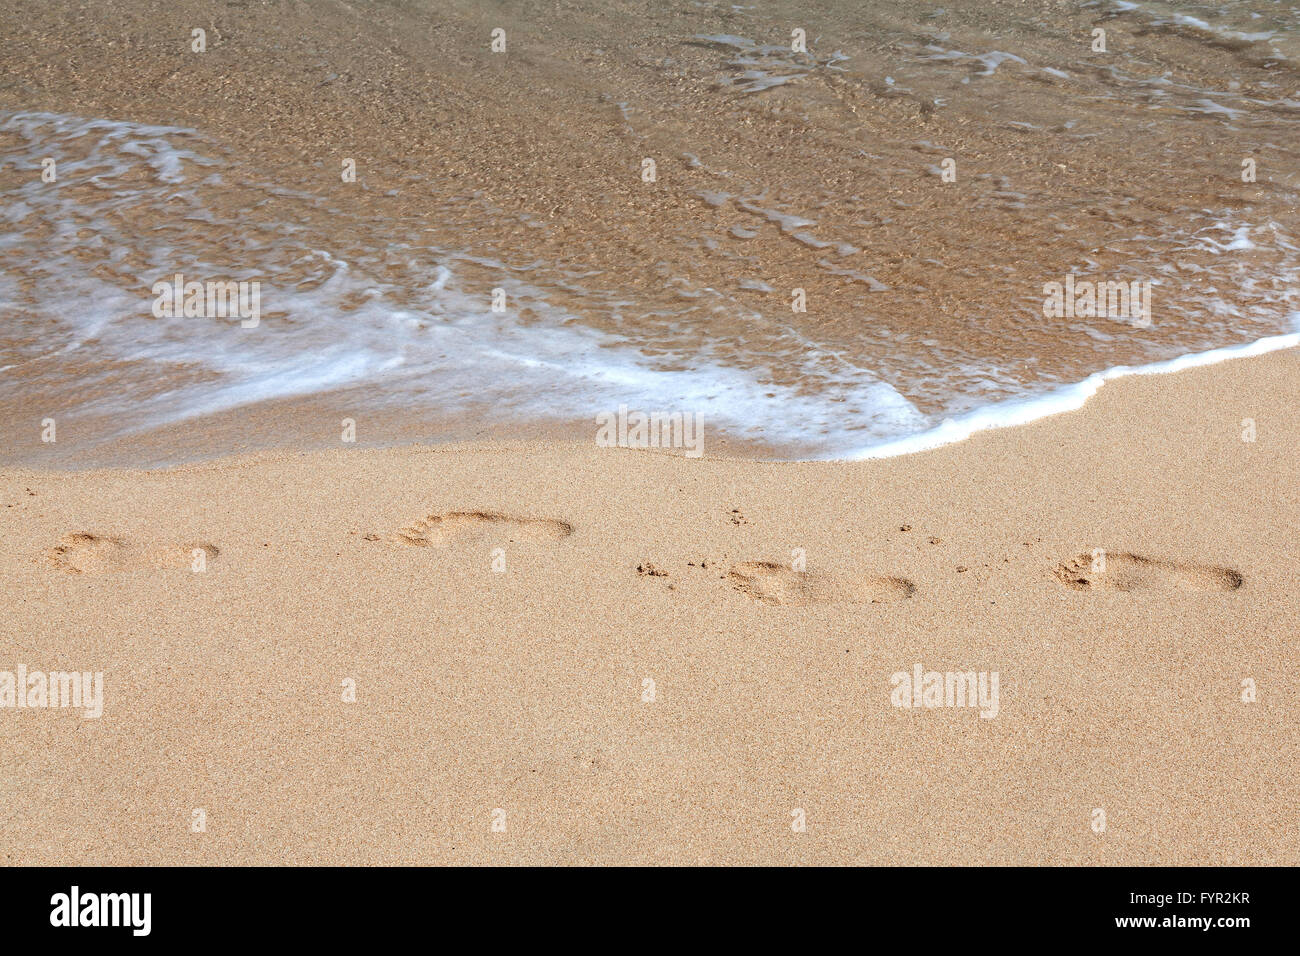 Tracks, footprints in the sand on the beach, sandy beach beach Stock Photo